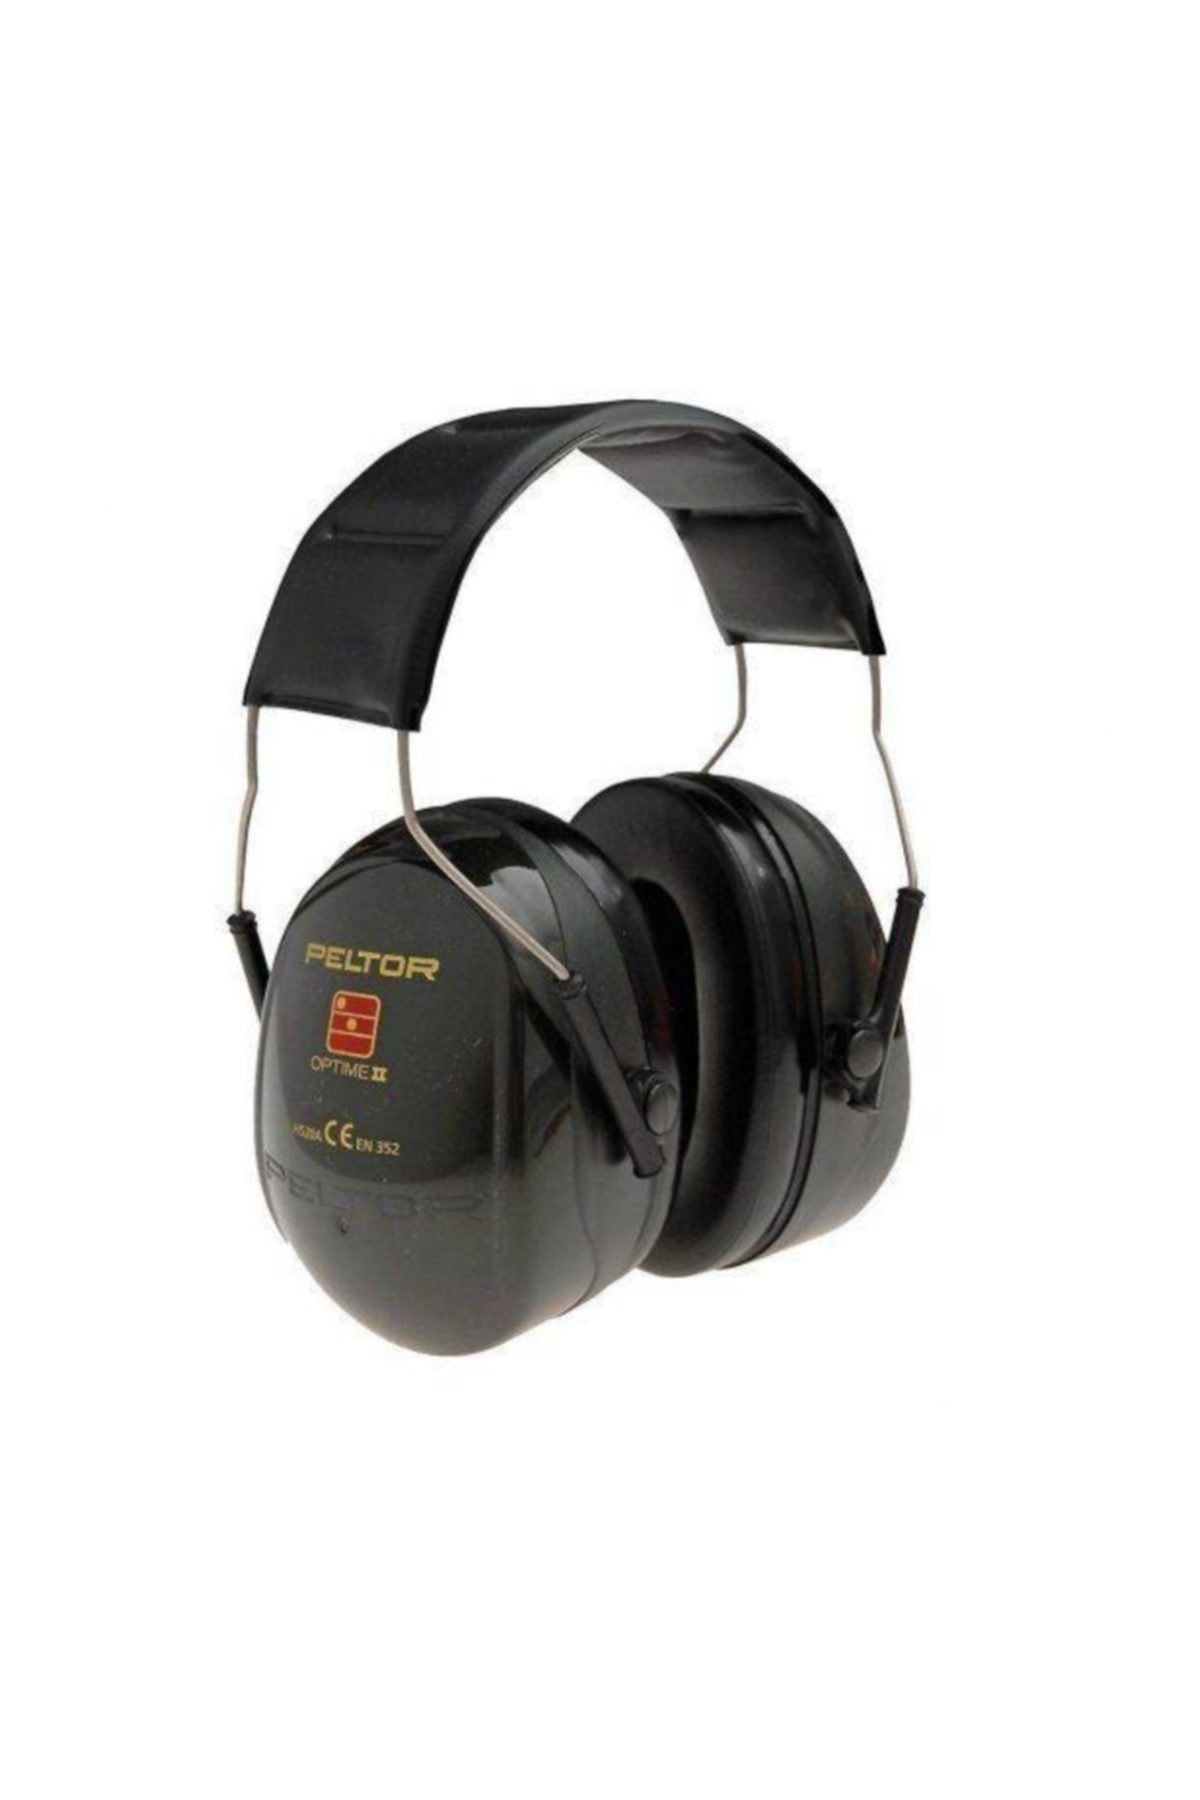 3M Peltor H520a Optime-ıı Baş Bantlı Kulaklık